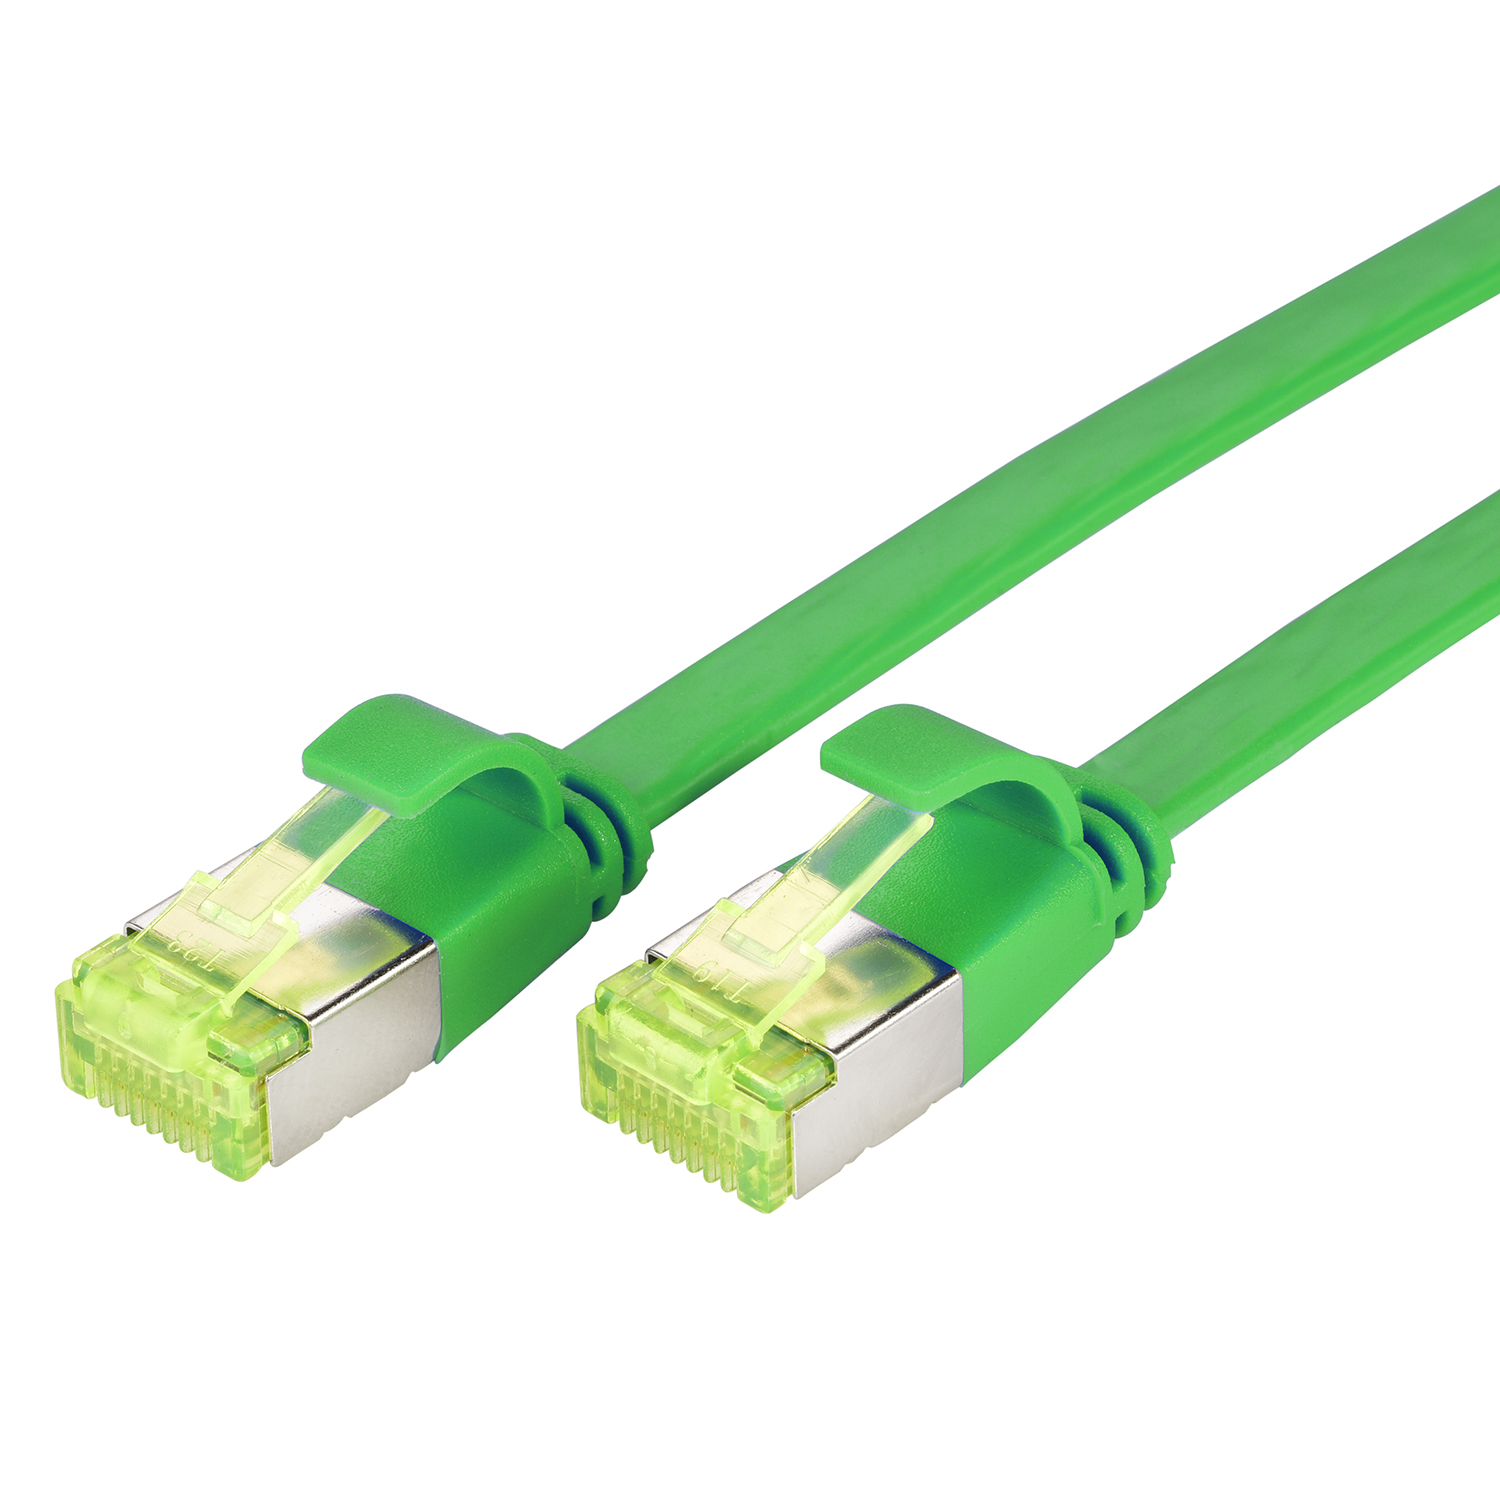 TPFNET 0,25m Patchkabel / 0,25 10 m GBit, U/FTP Netzwerkkabel, Flachkabel grün